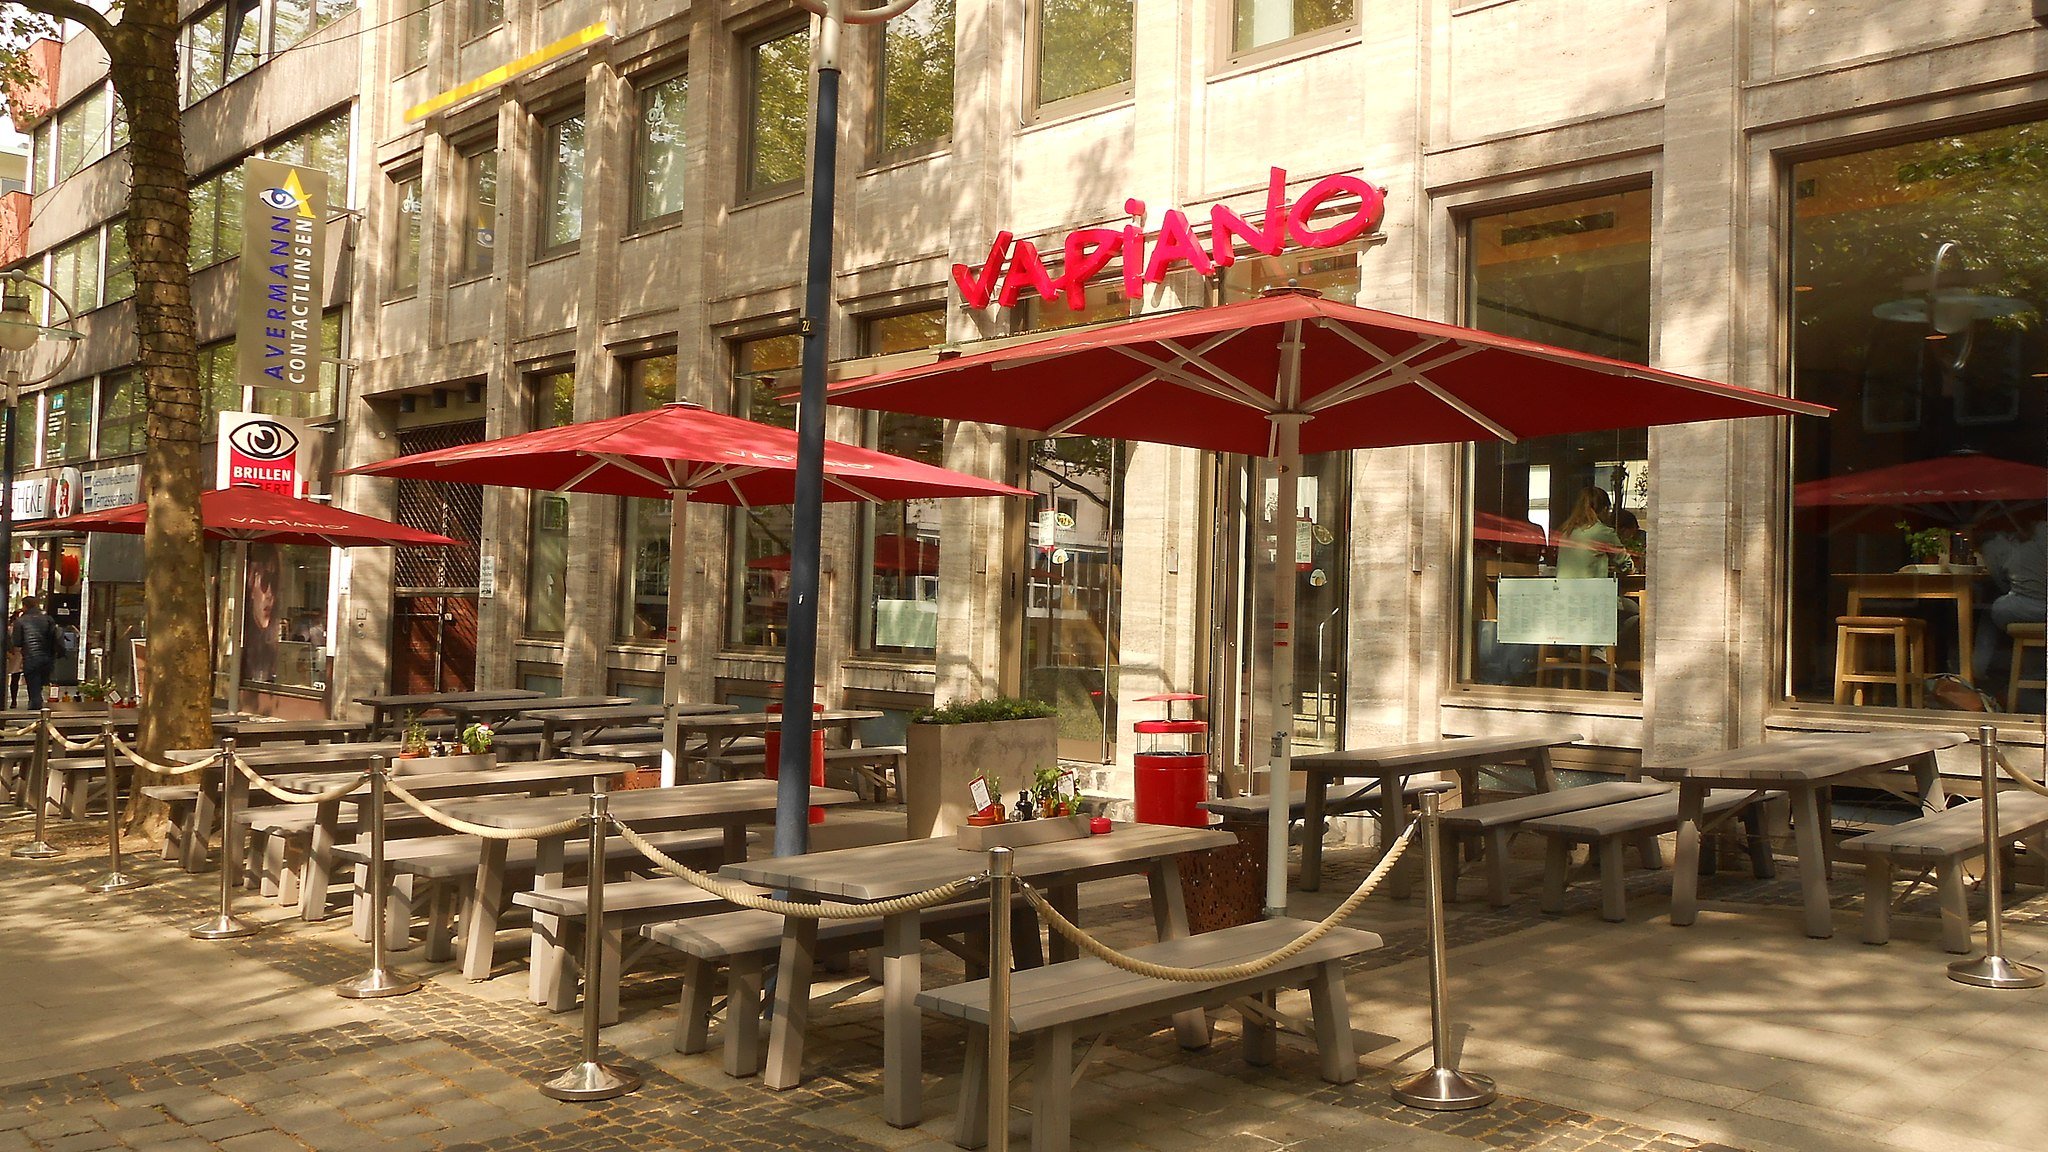 Una cadena de restaurants alemanya obre a Diagonal Mar el seu primer establiment de l'Estat